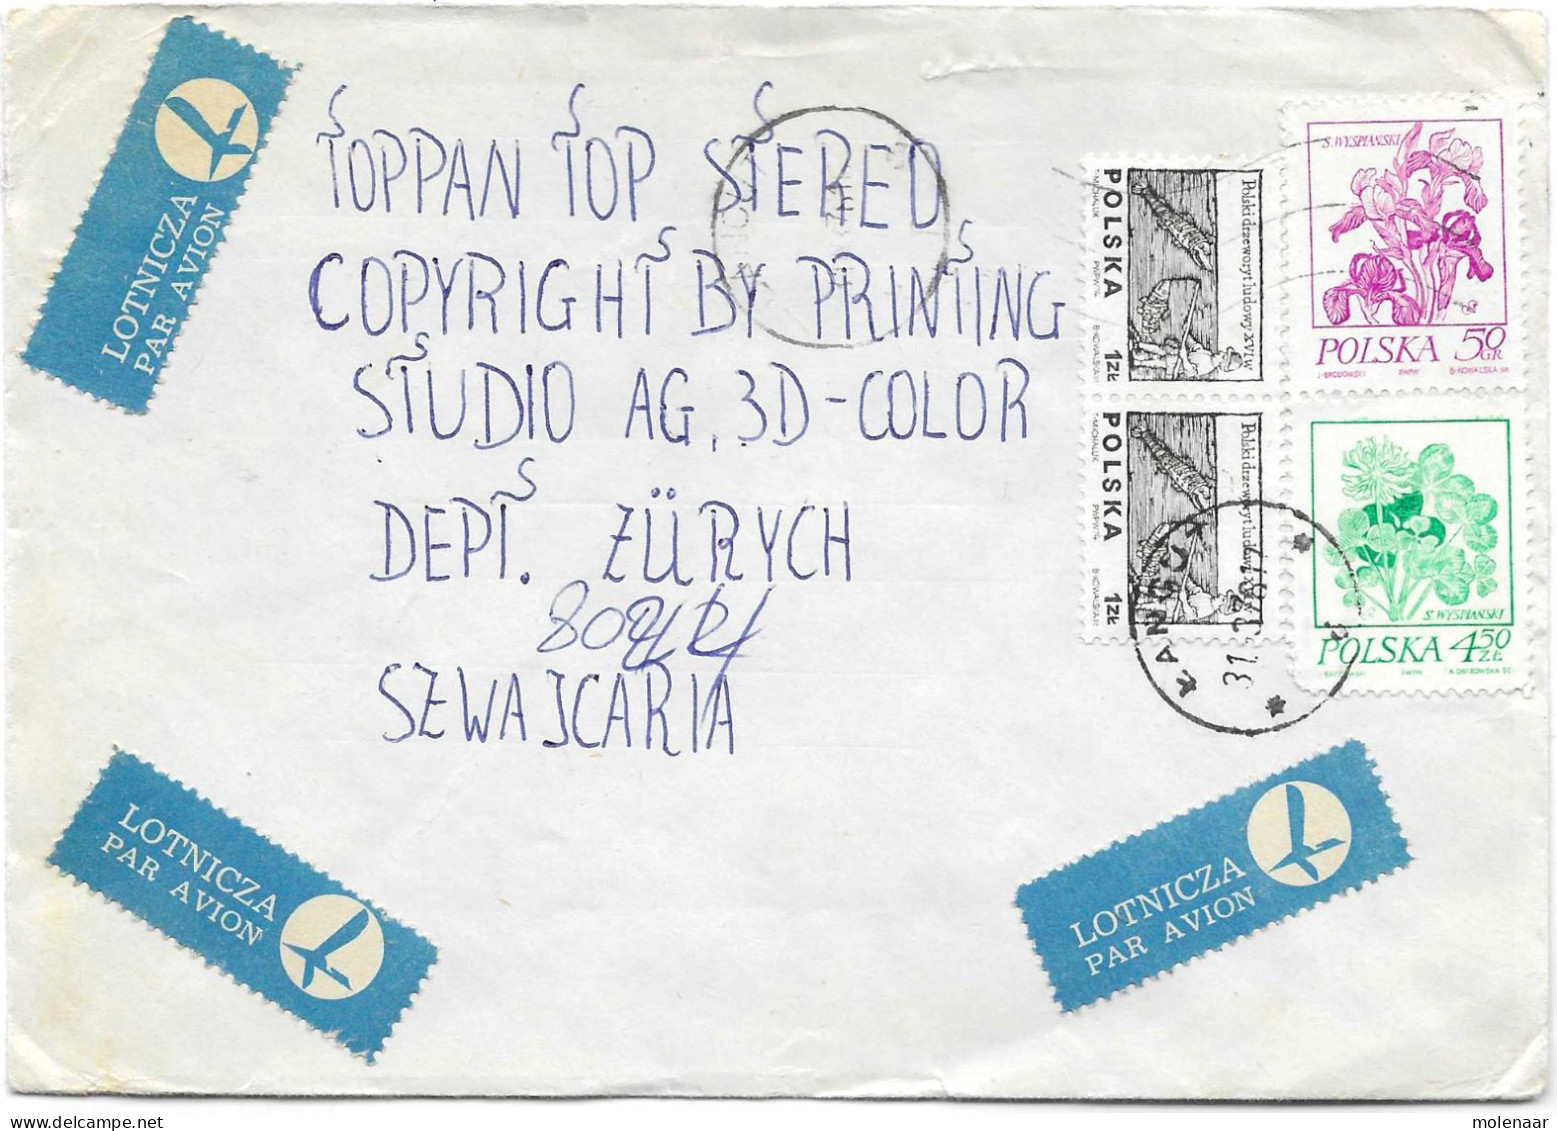 Postzegels > Europa > Polen > 1944-.... Republiek > 1971-80 > Brief Met 4 Postzegels (17132) - Covers & Documents